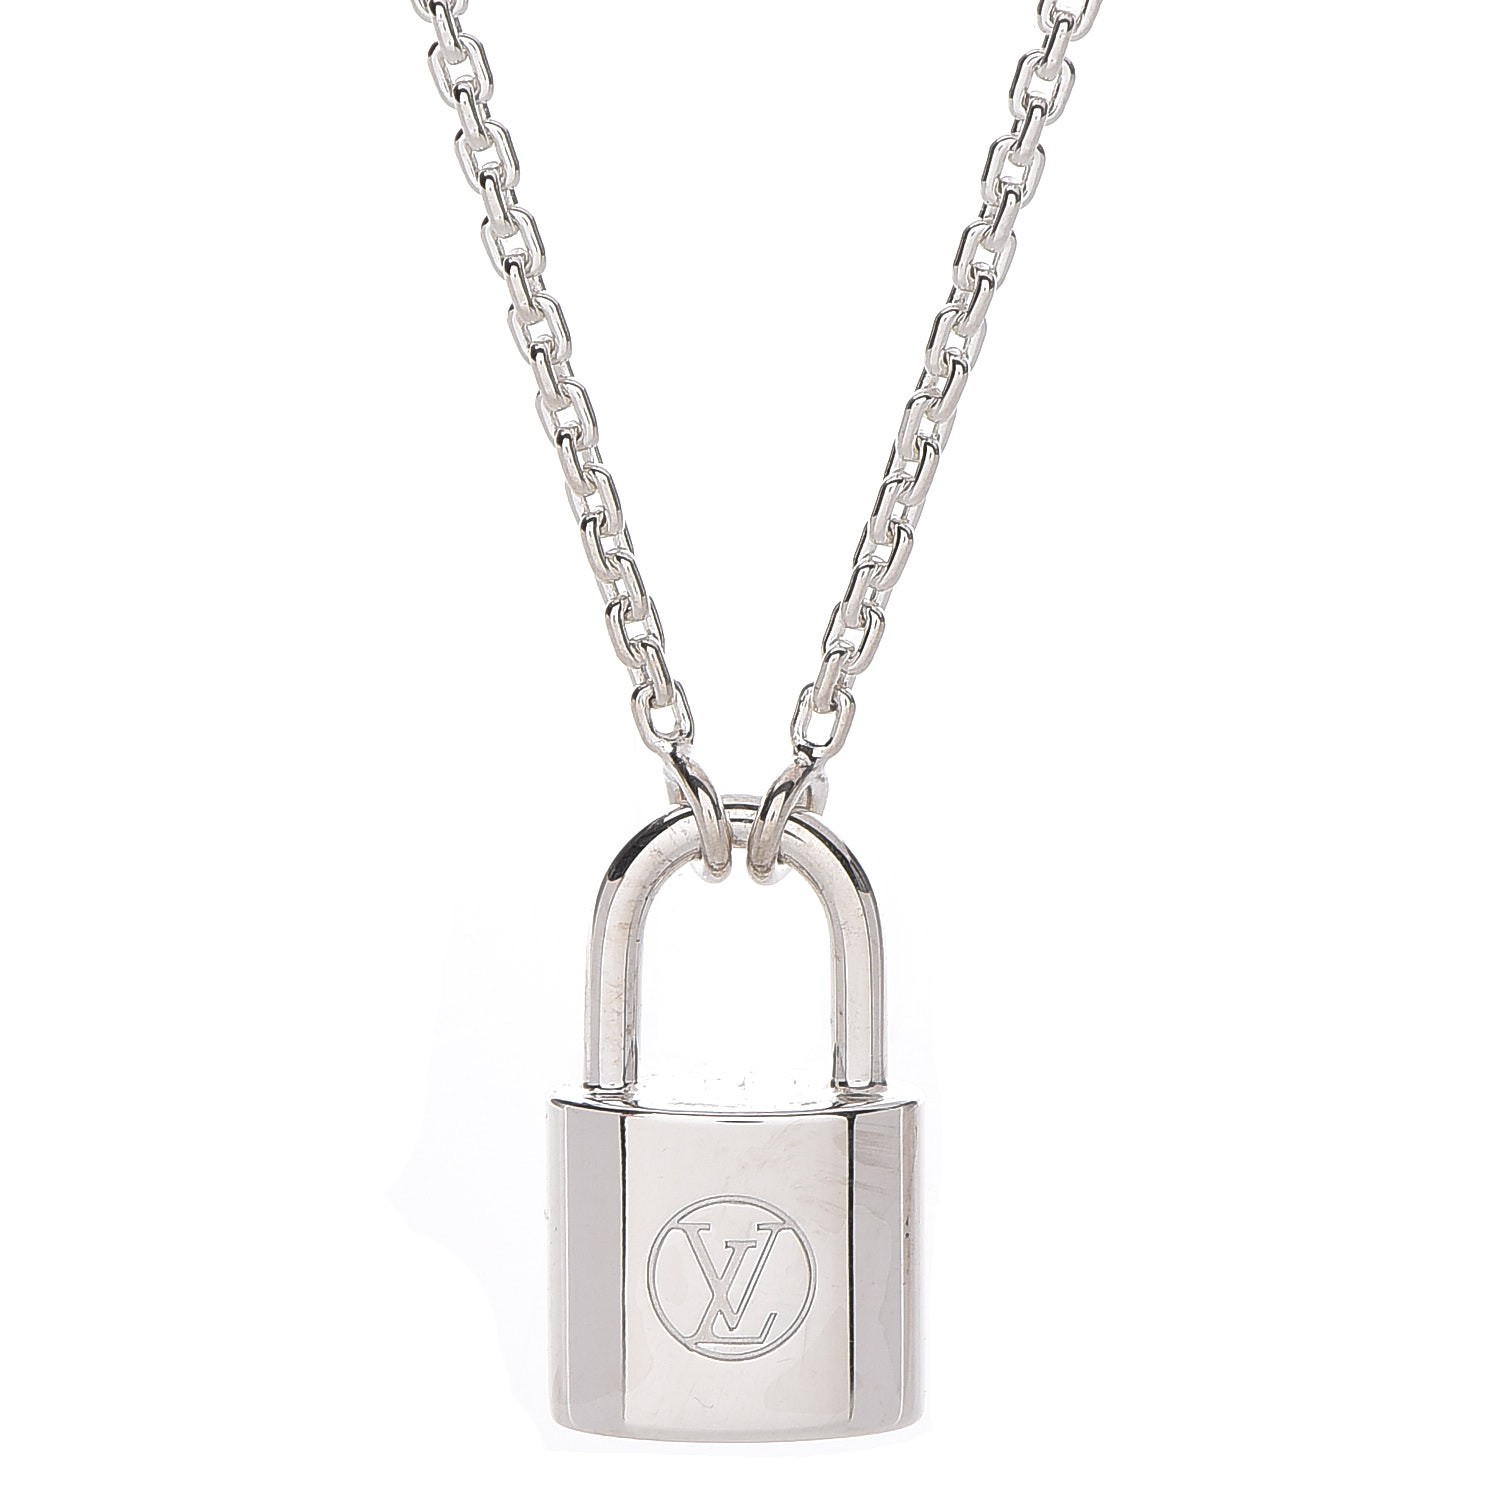 Louis Vuitton Silver Lockit x Virgil Abloh Bracelet, Natural Titanium Rainbow. Size NSA